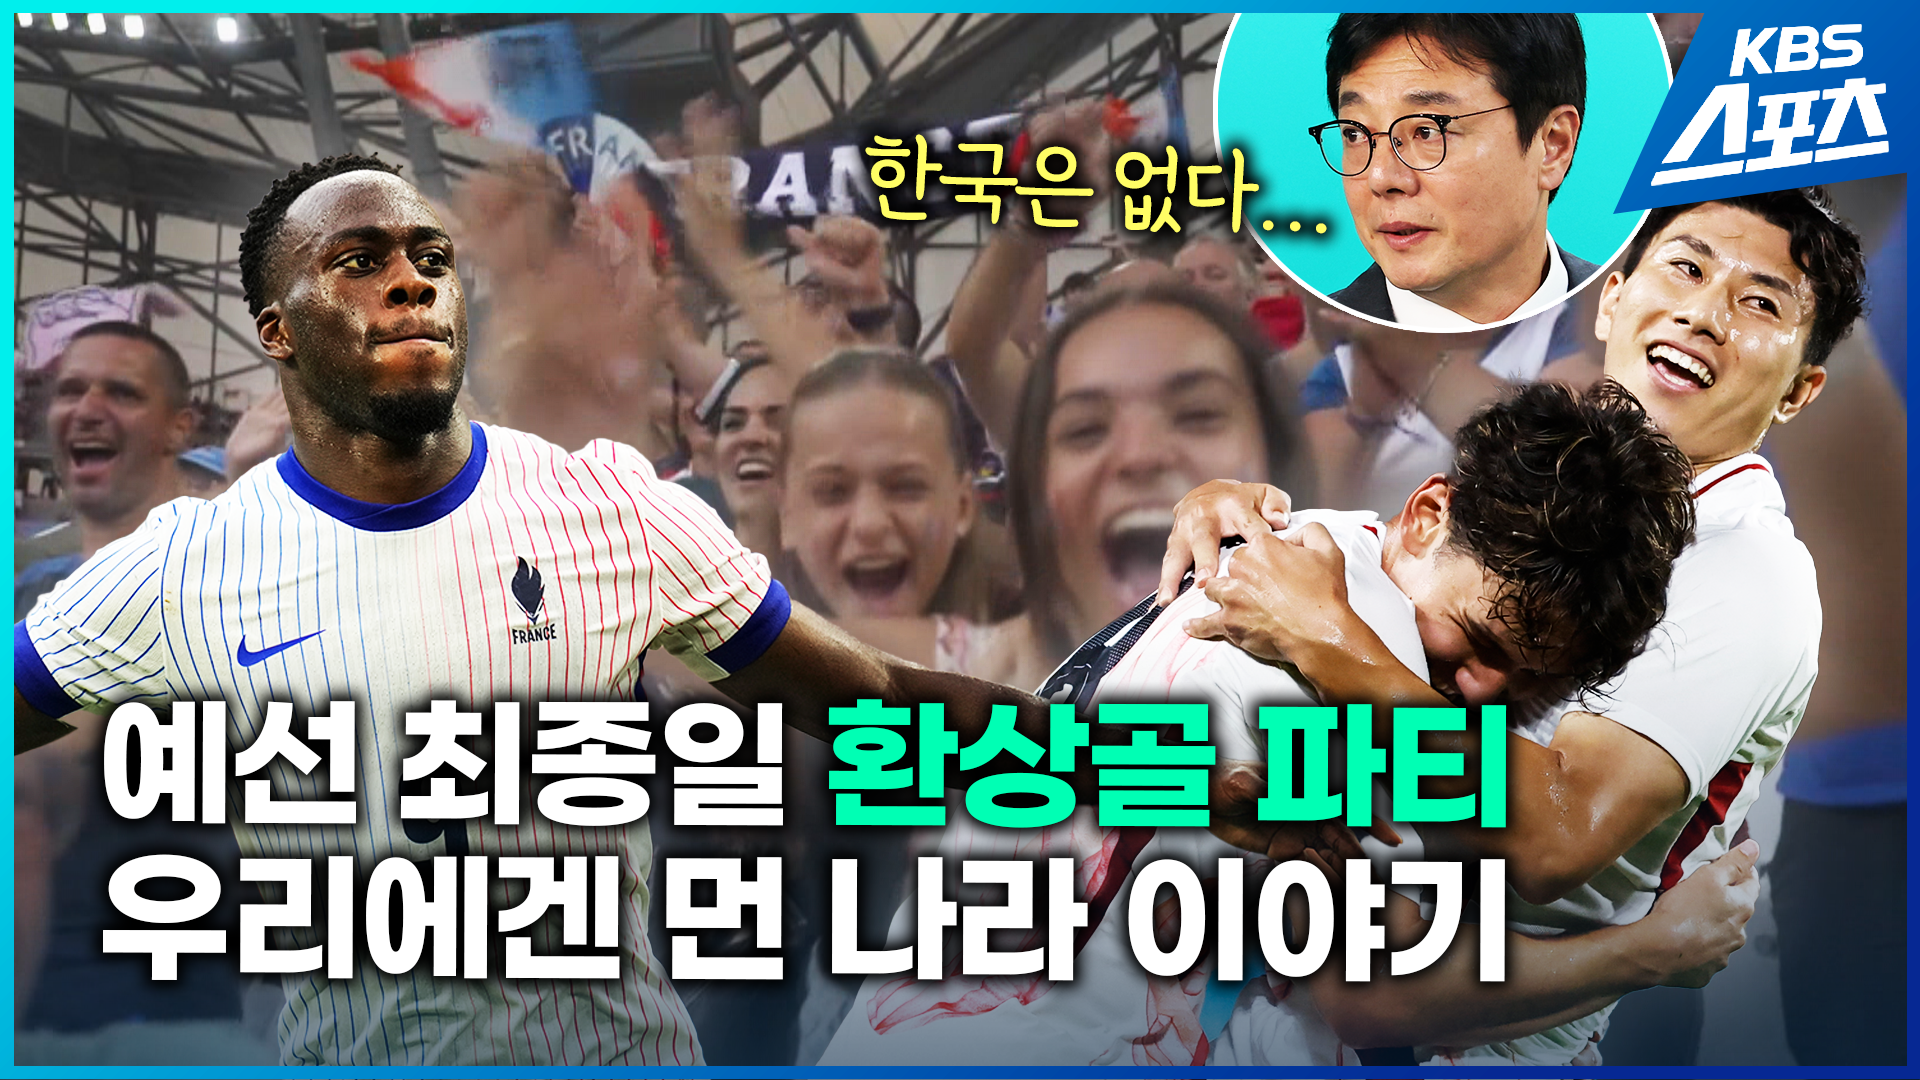 [영상] 올림픽 축구 환상골 퍼레이드…한국에는 전해지지 않는 열기